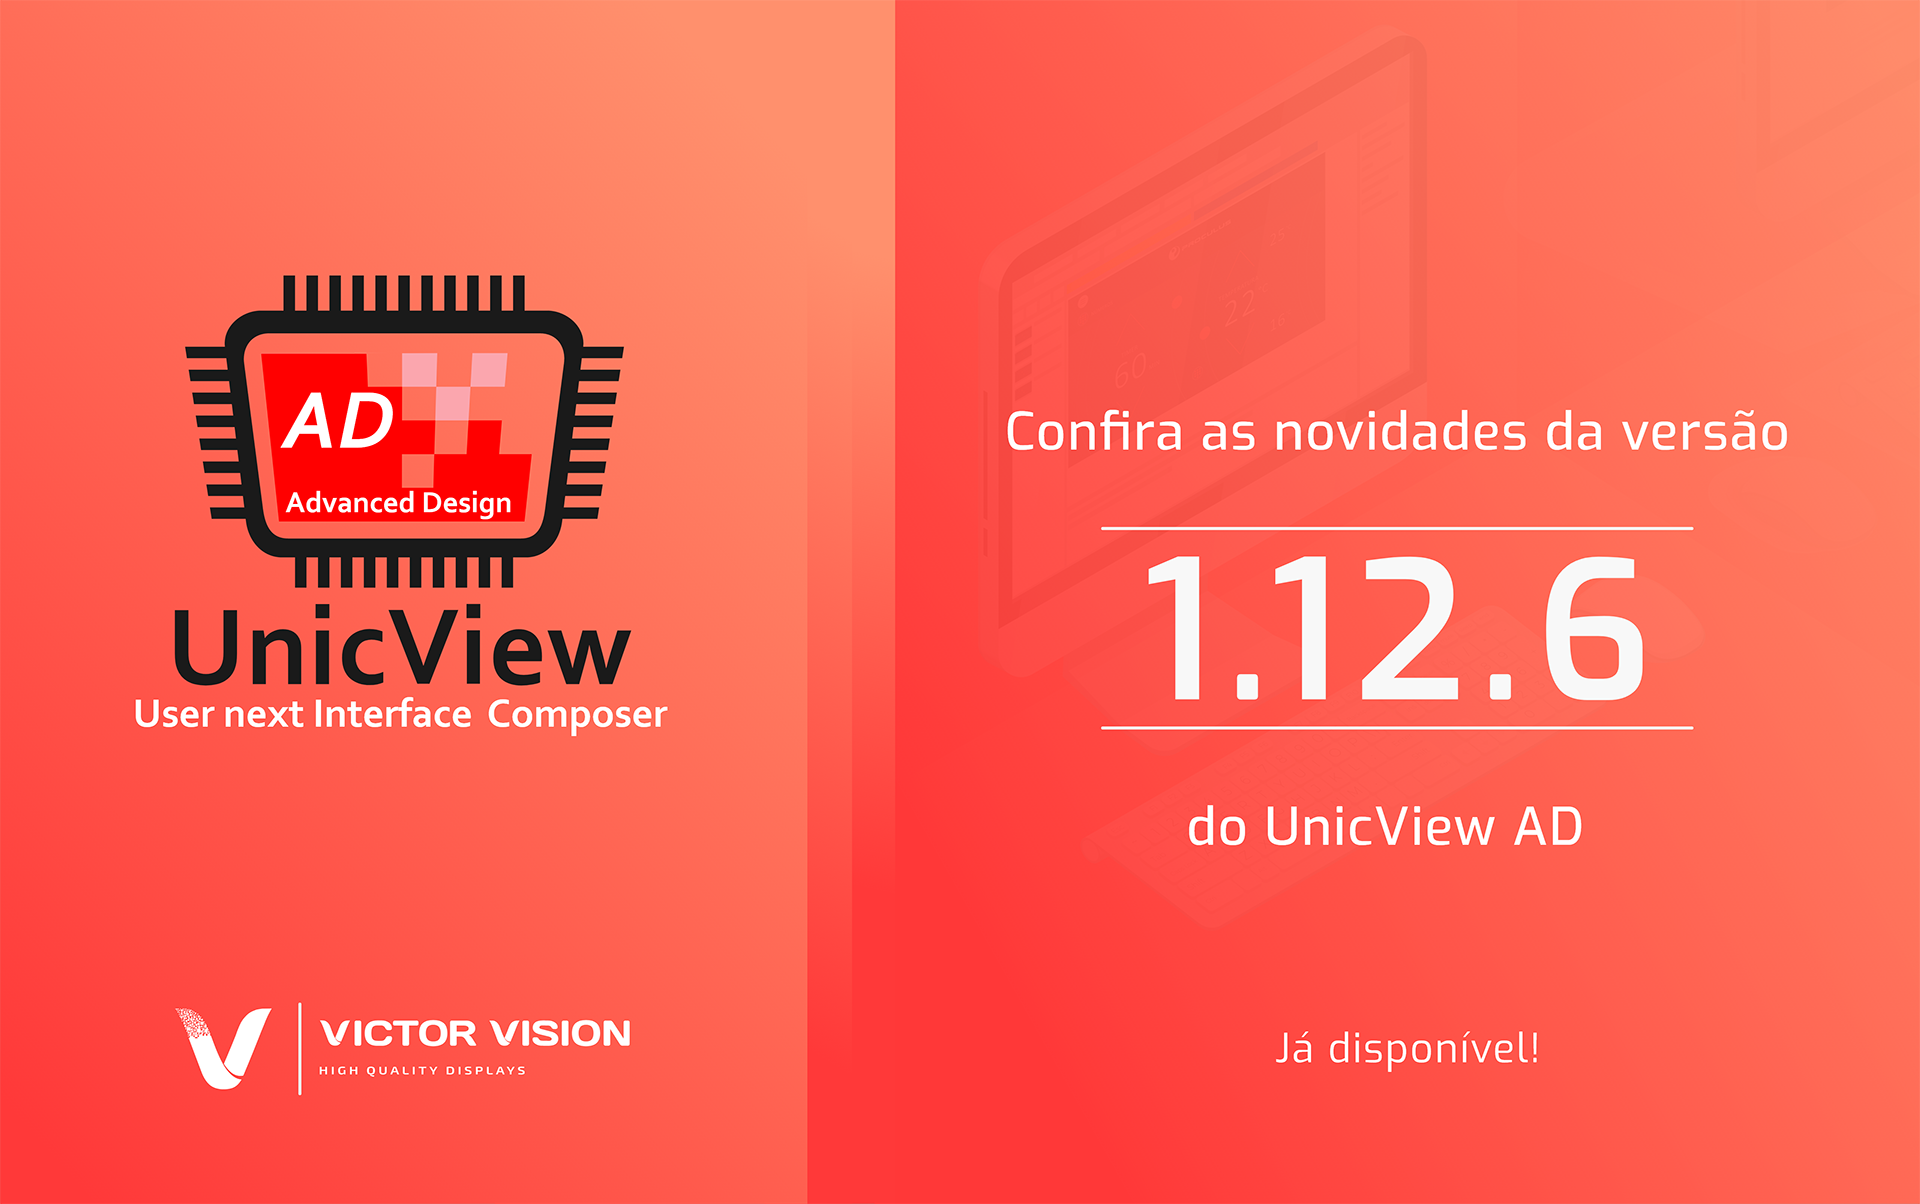 Atualização do software UnicView AD 1.12.6